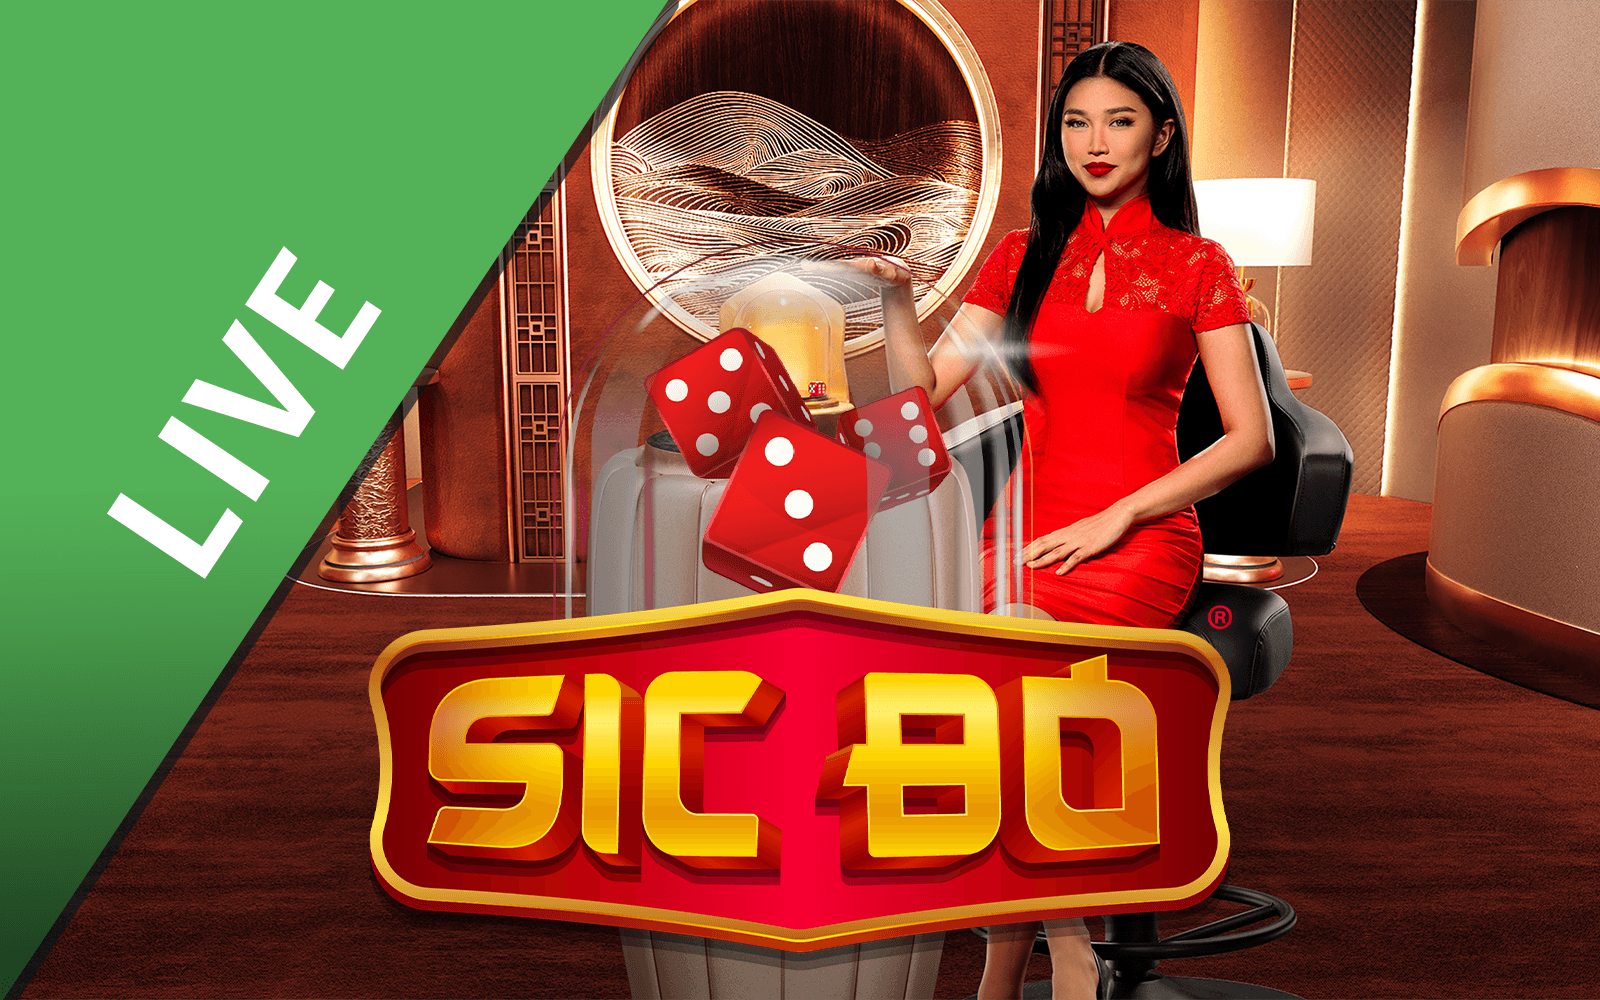 Gioca a Sic Bo™ sul casino online Starcasino.be